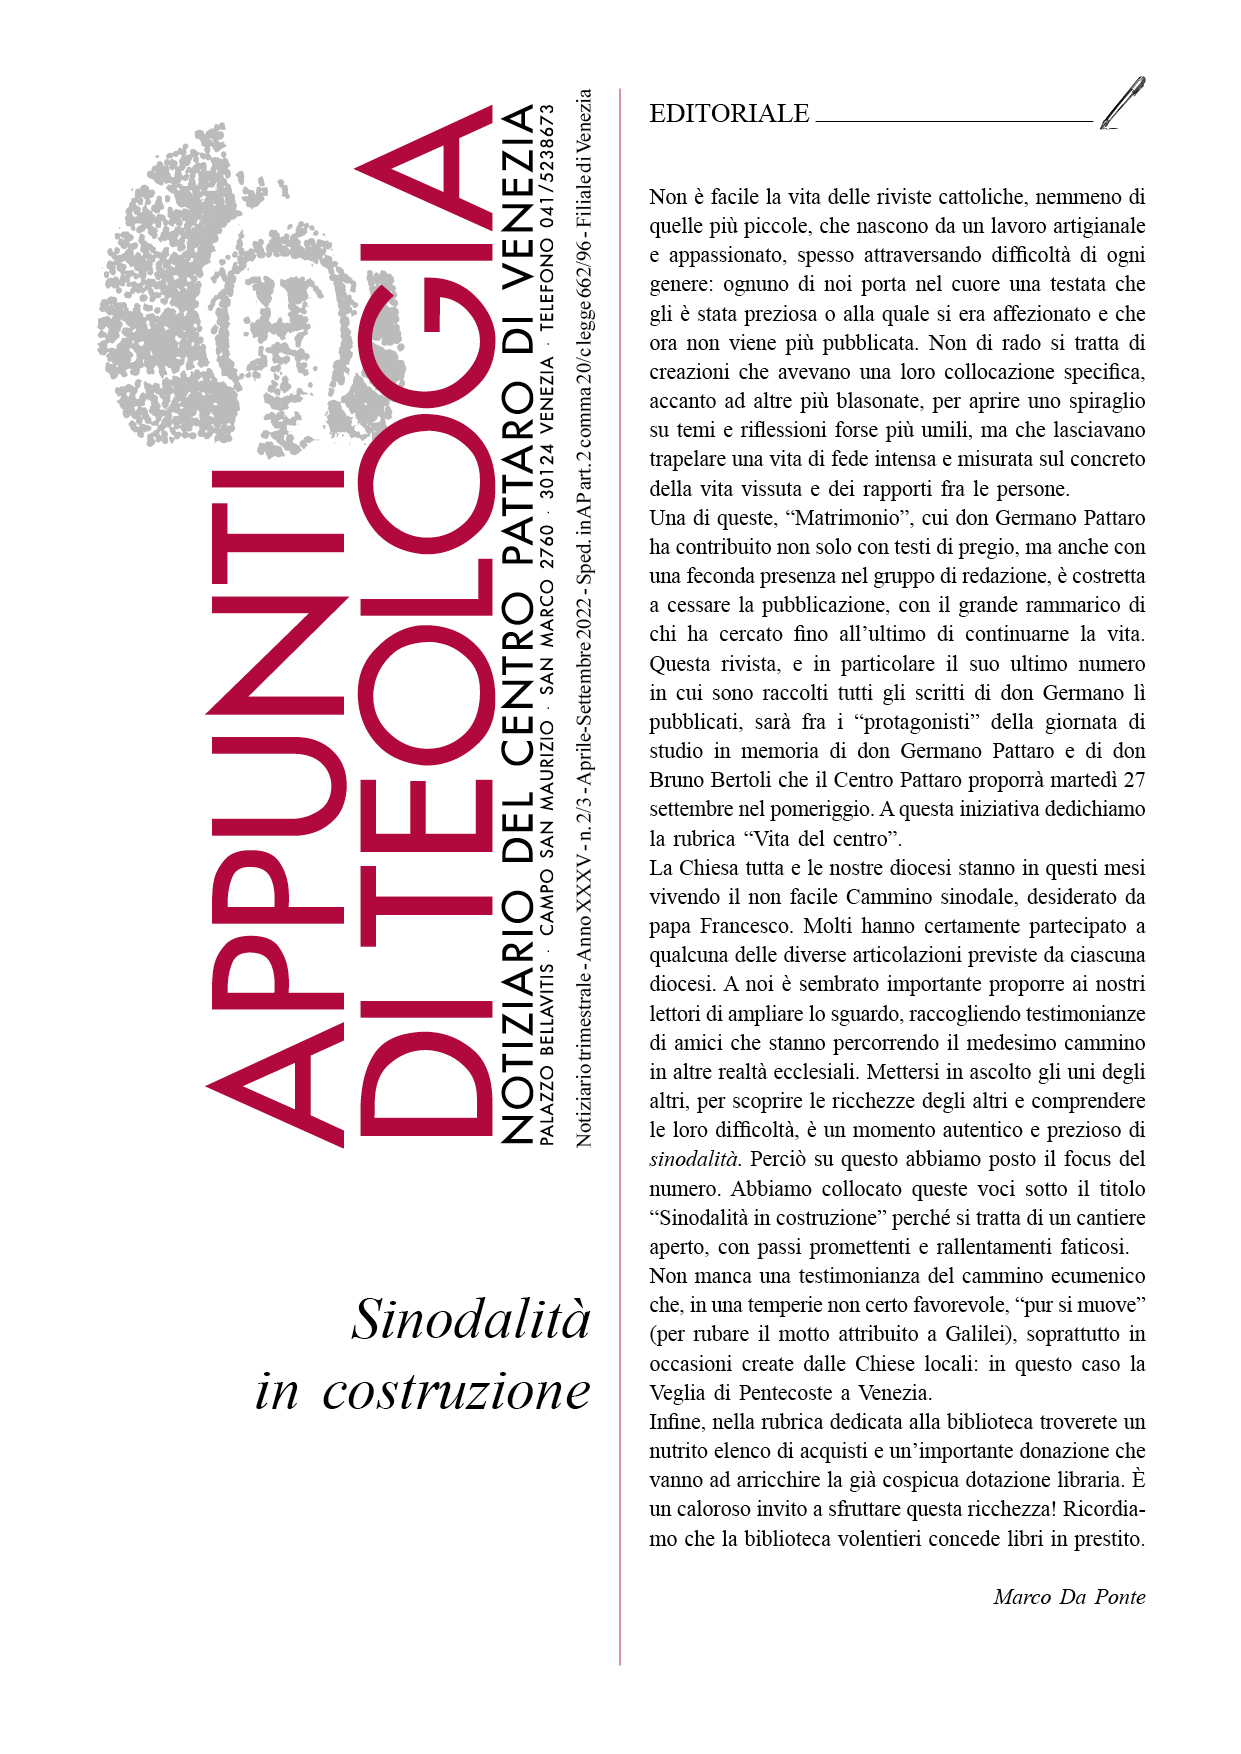 PATTARO COPERTINA 8 22